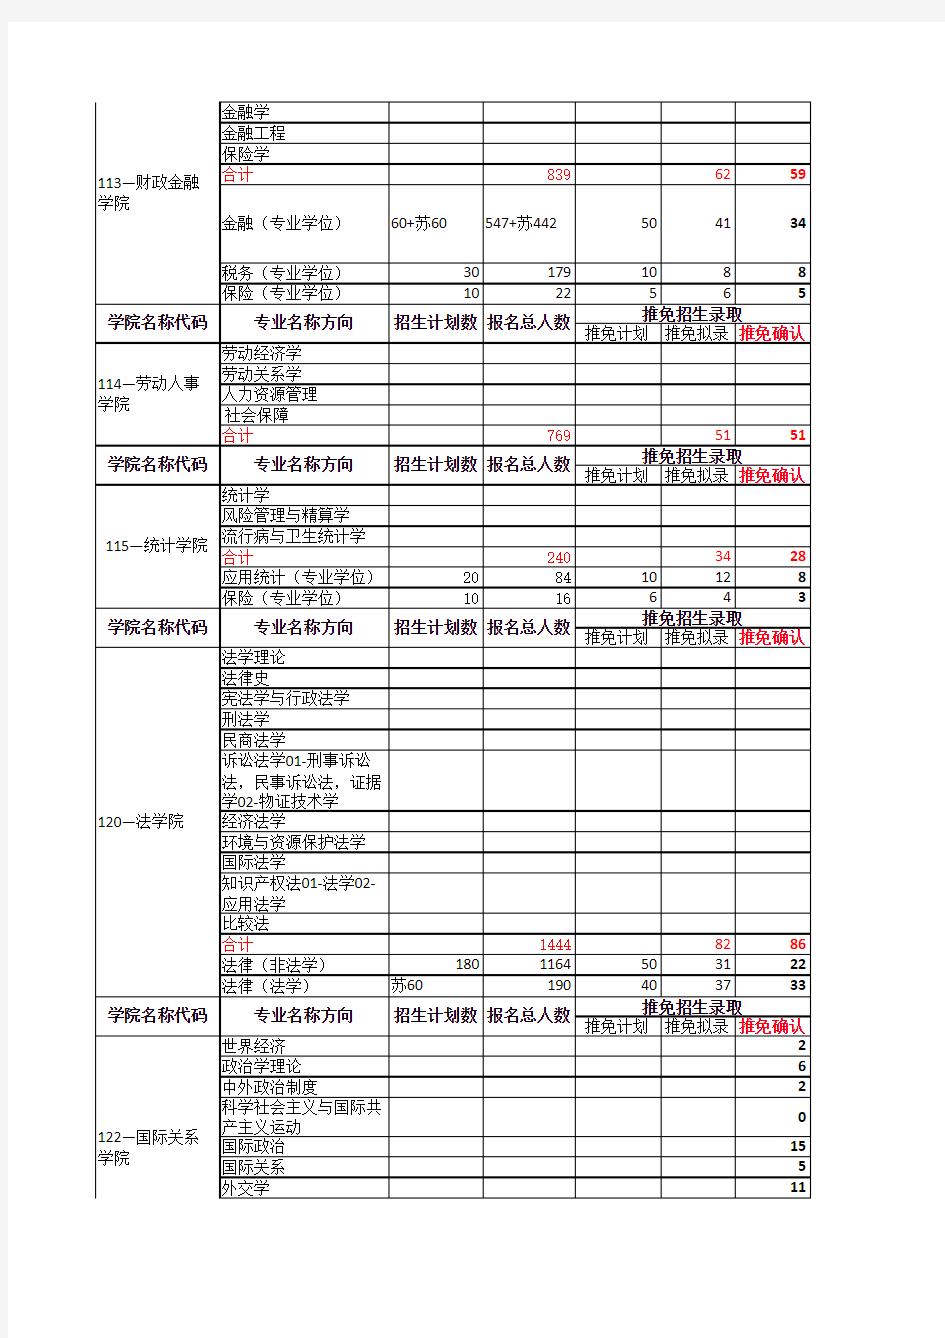 中国人民大学2013年度硕士研究生招生录取情况表